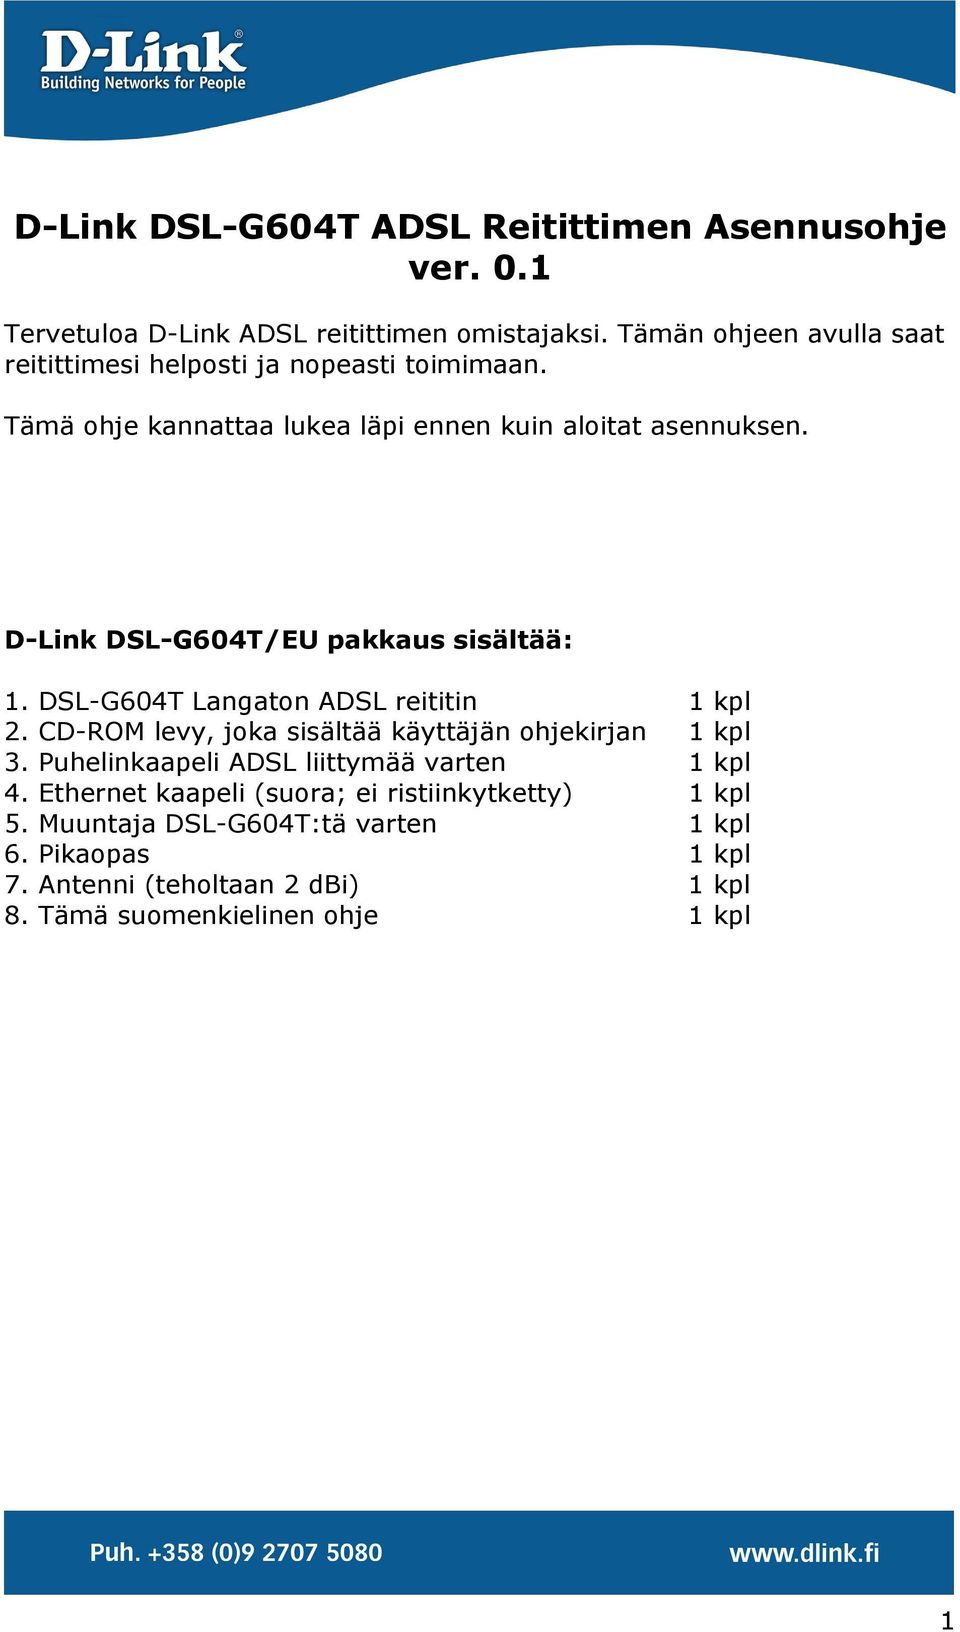 D-Link DSL-G604T/EU pakkaus sisältää: 1. DSL-G604T Langaton ADSL reititin 1 kpl 2. CD-ROM levy, joka sisältää käyttäjän ohjekirjan 1 kpl 3.